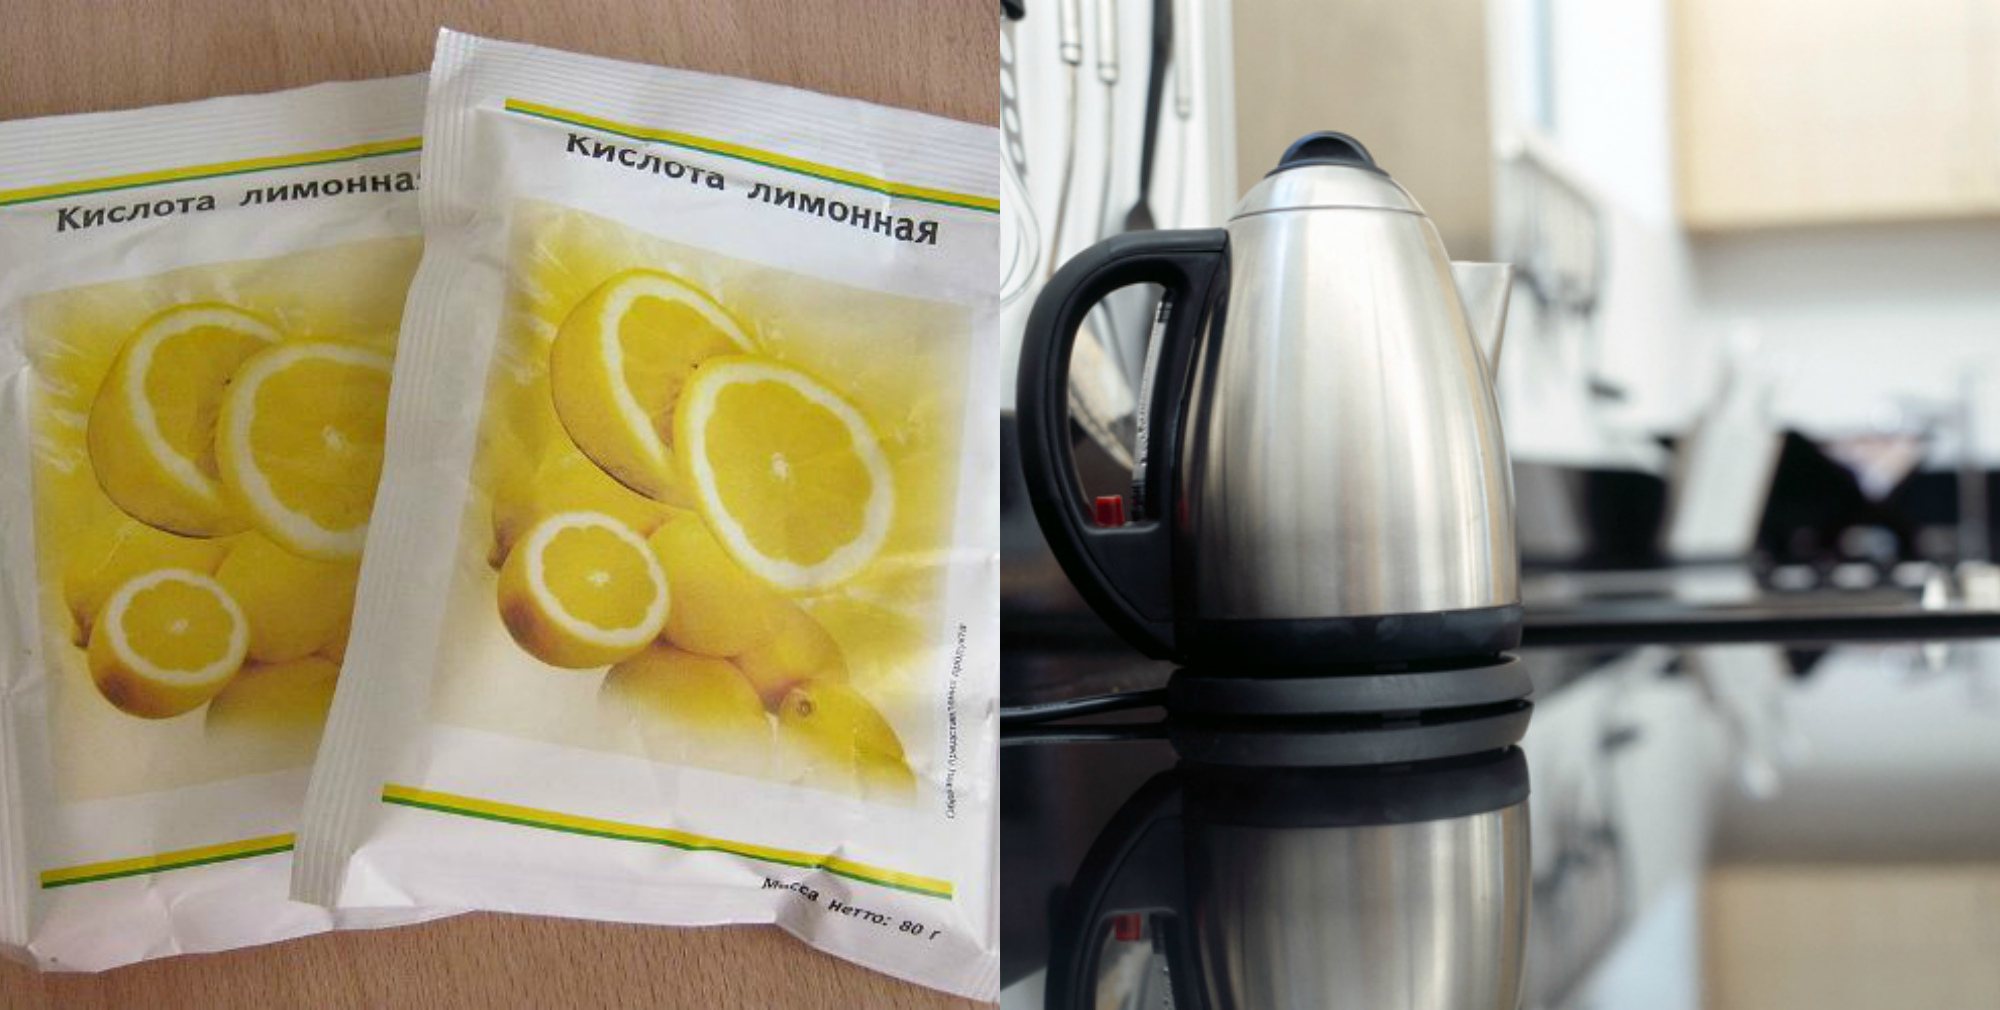 Сколько лимонной кислоты нужно для очистки чайника. Лимонная кислота от накипи в чайнике электрическом. Накипь лимонная кислота электрический чайник. Чистка чайника лимонной кислотой. Накипь в чайнике лимонной кислотой.